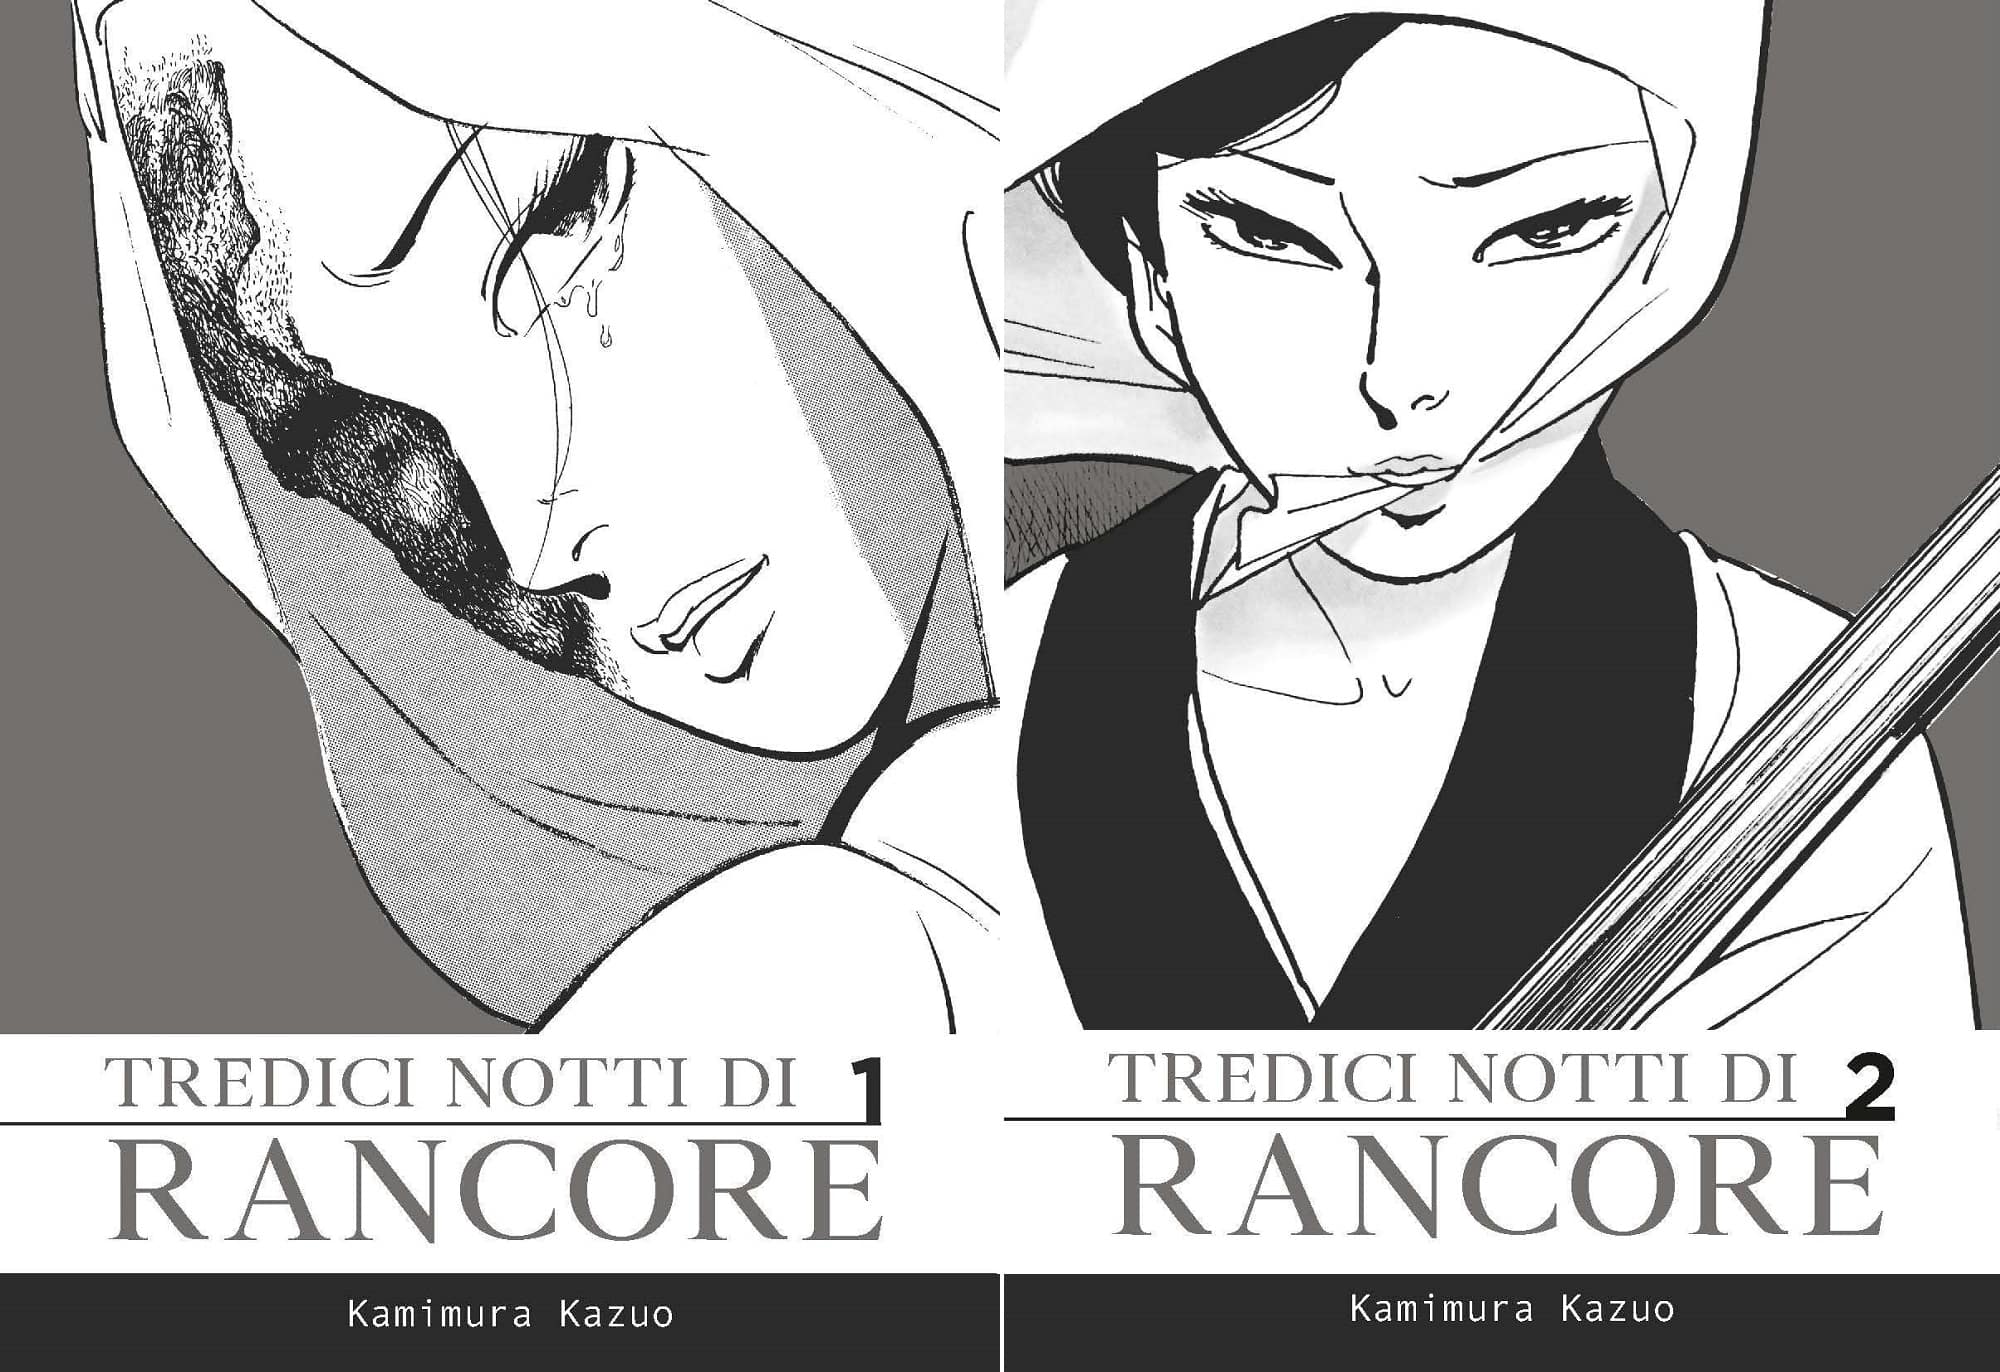 Kamimura Kazuo, Tredici notti di rancore, Coconino Press, 2 volumi, 30 euro cadauno